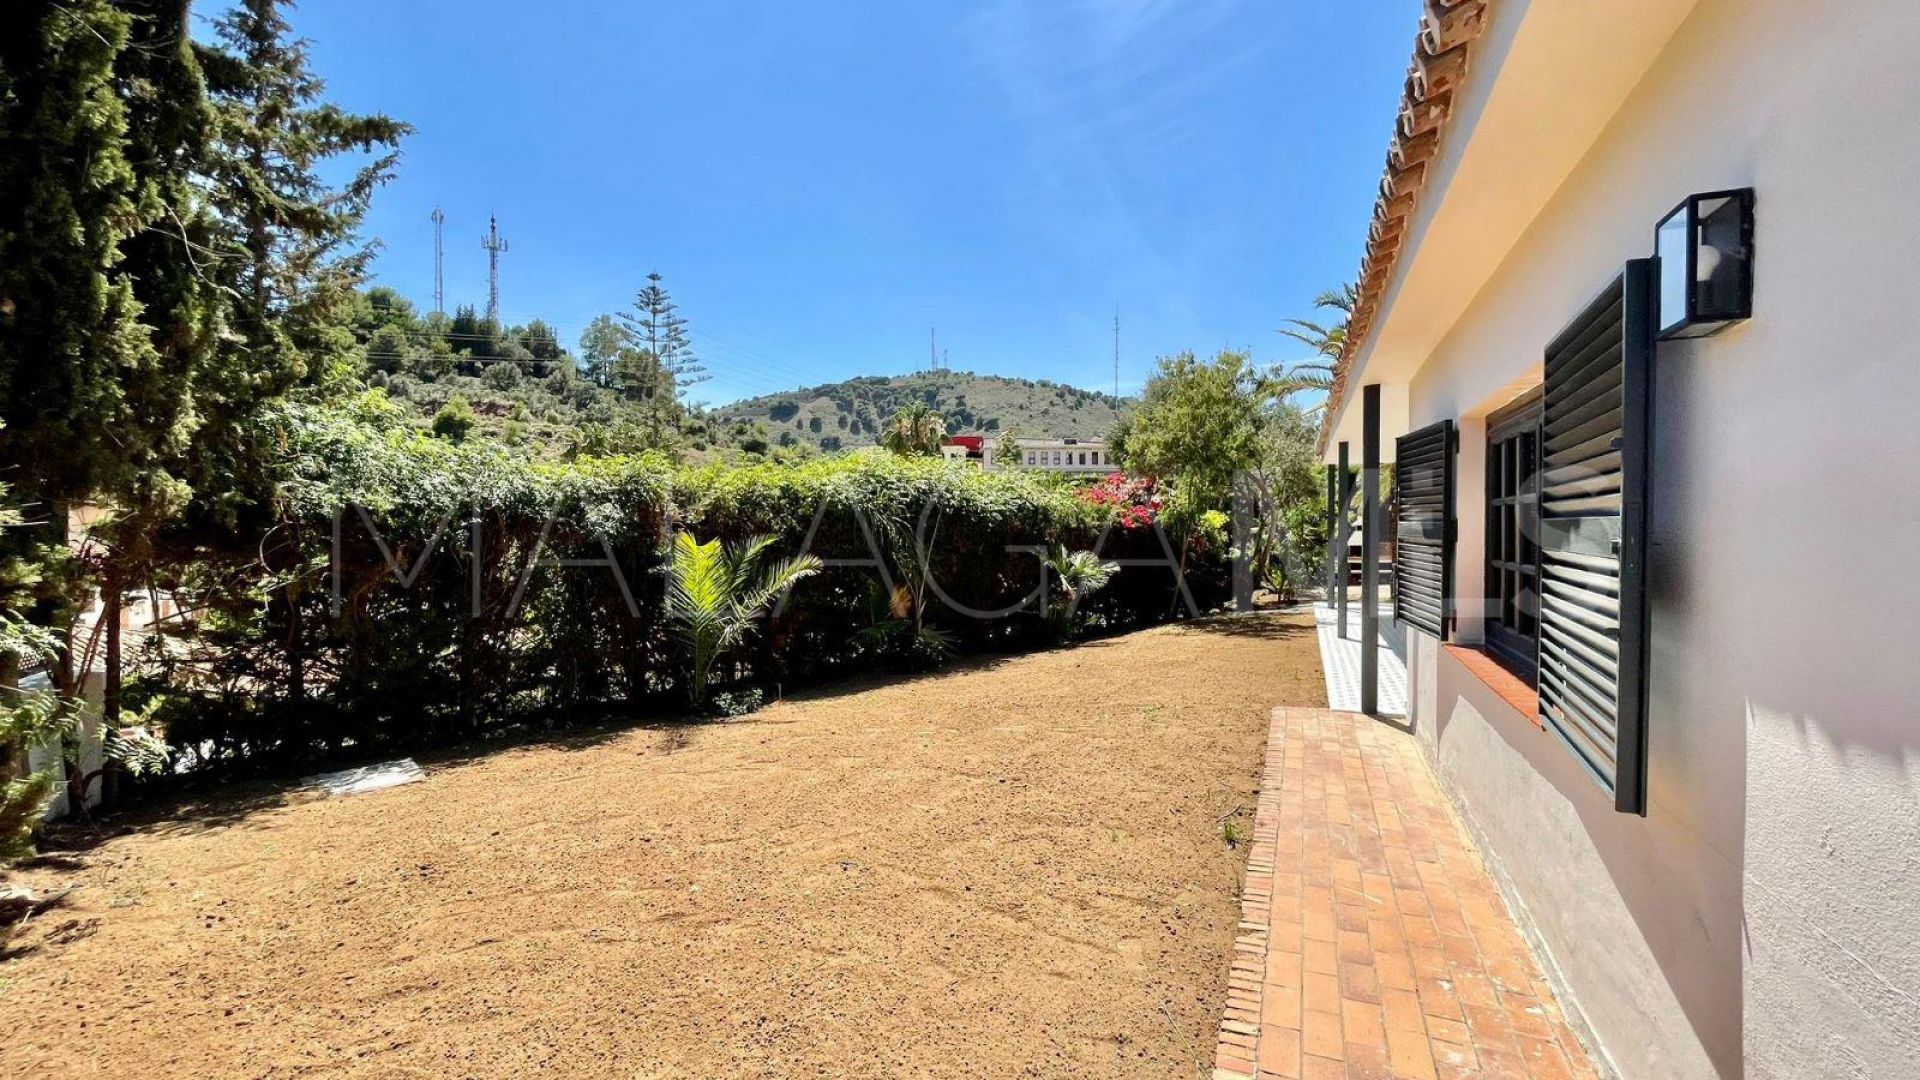 Villa for sale in El Limonar with 6 bedrooms